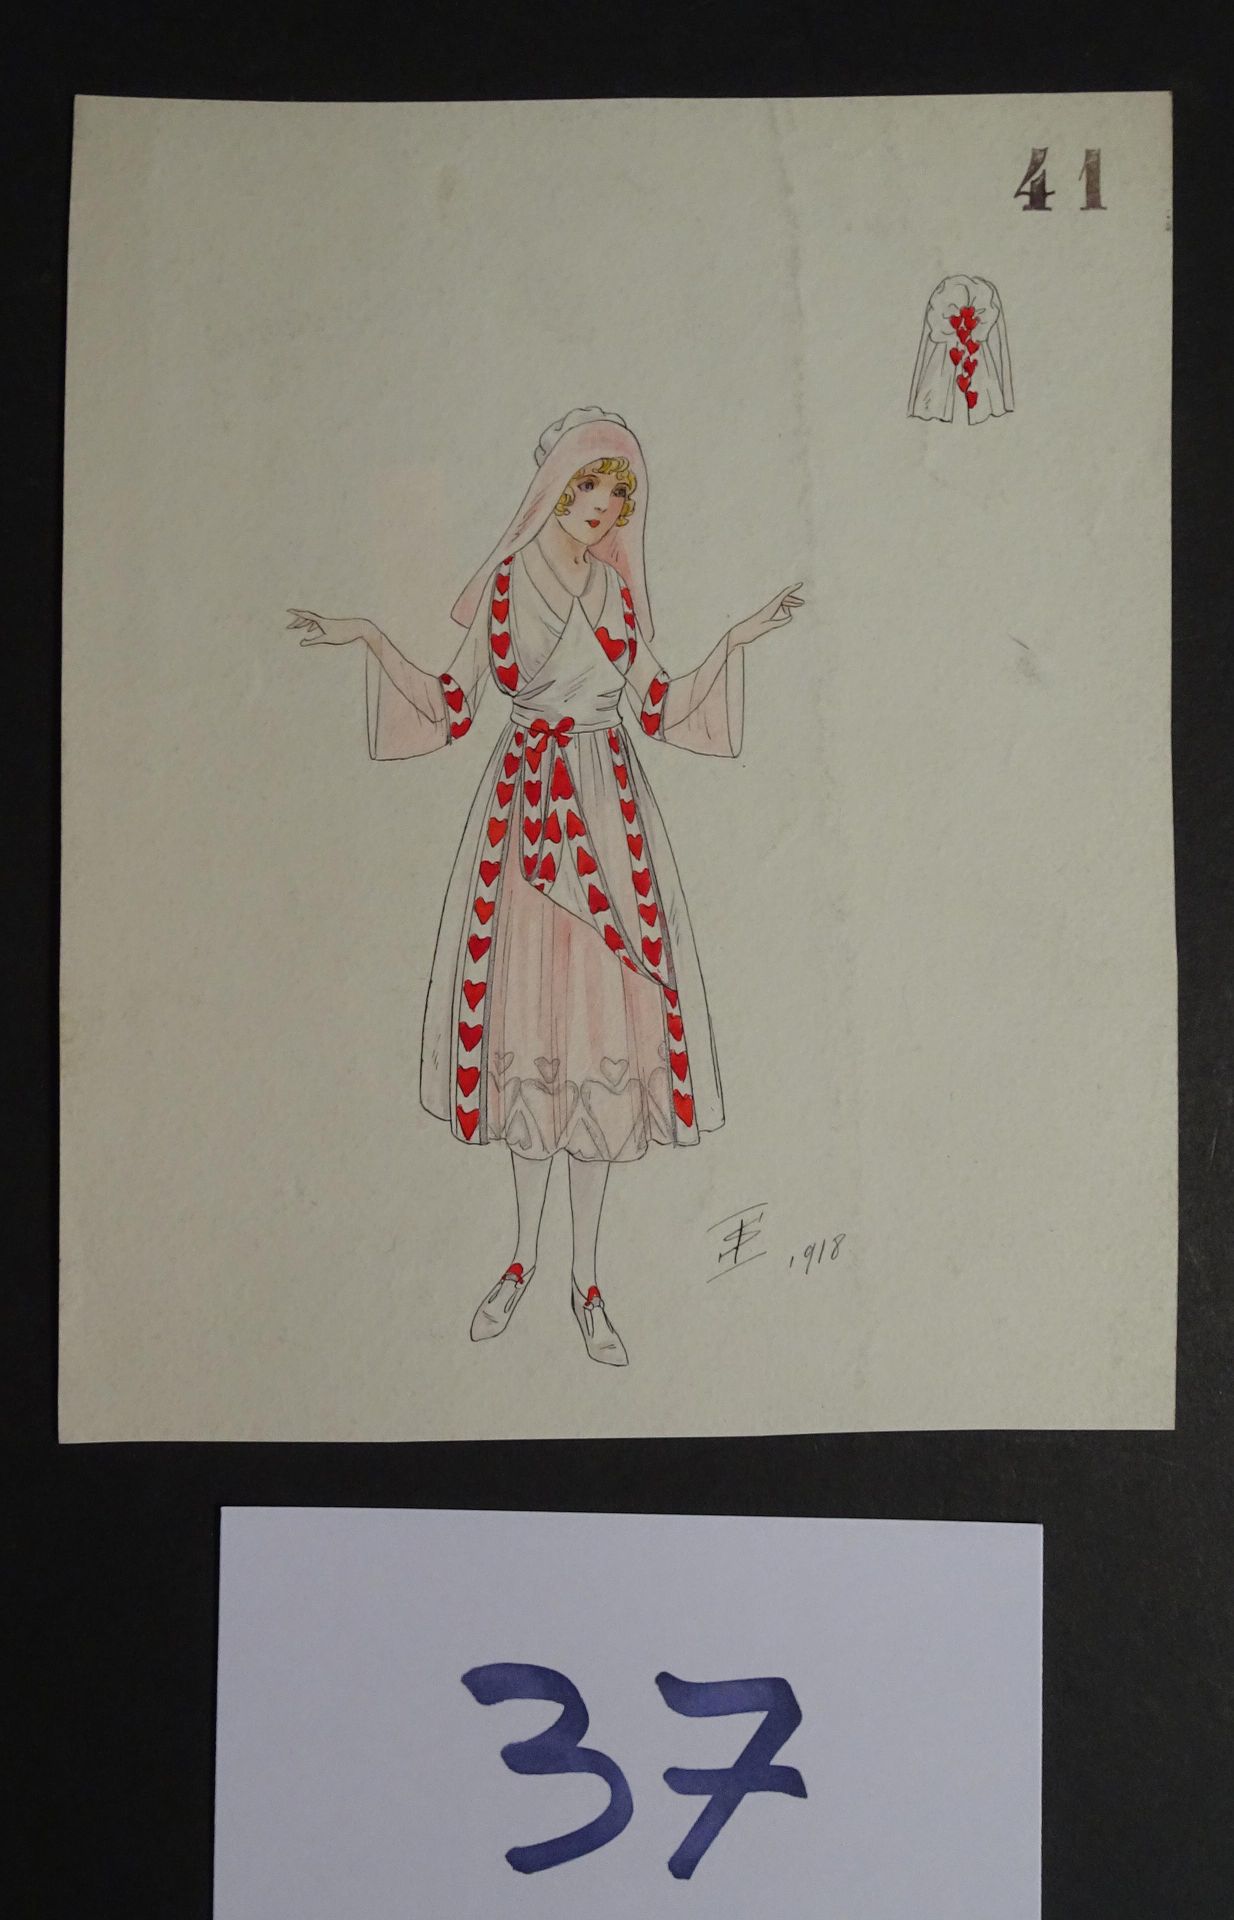 SOKOLOFF SOKOLOFF IGOR ( début du Xxéme siècle) 

"Femme à la robe coeur". Plume&hellip;